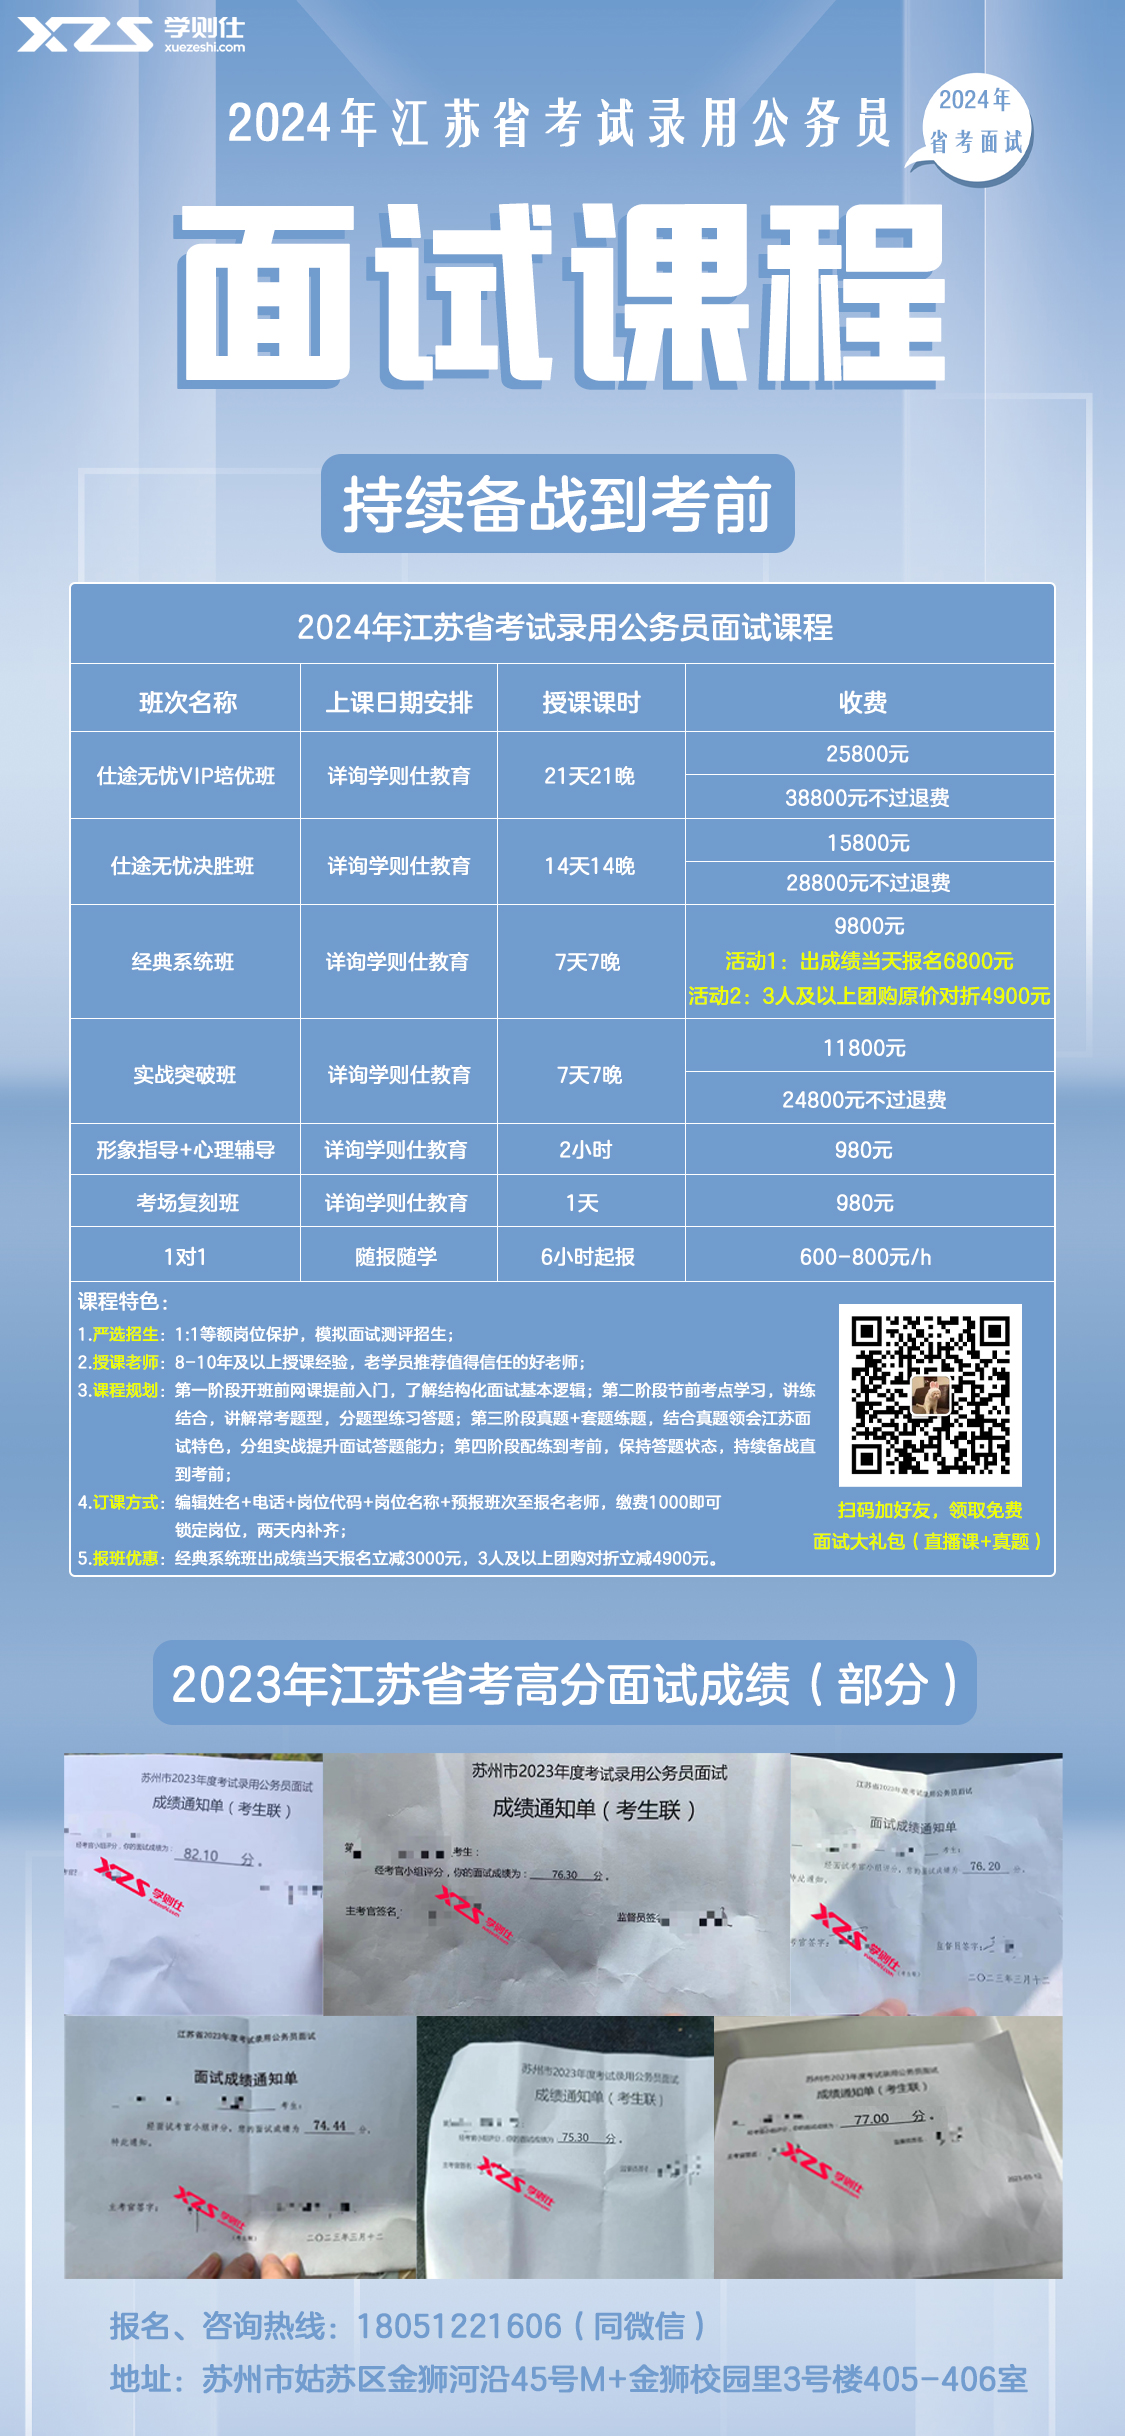 2024年江苏省考试录用公务员面试课程